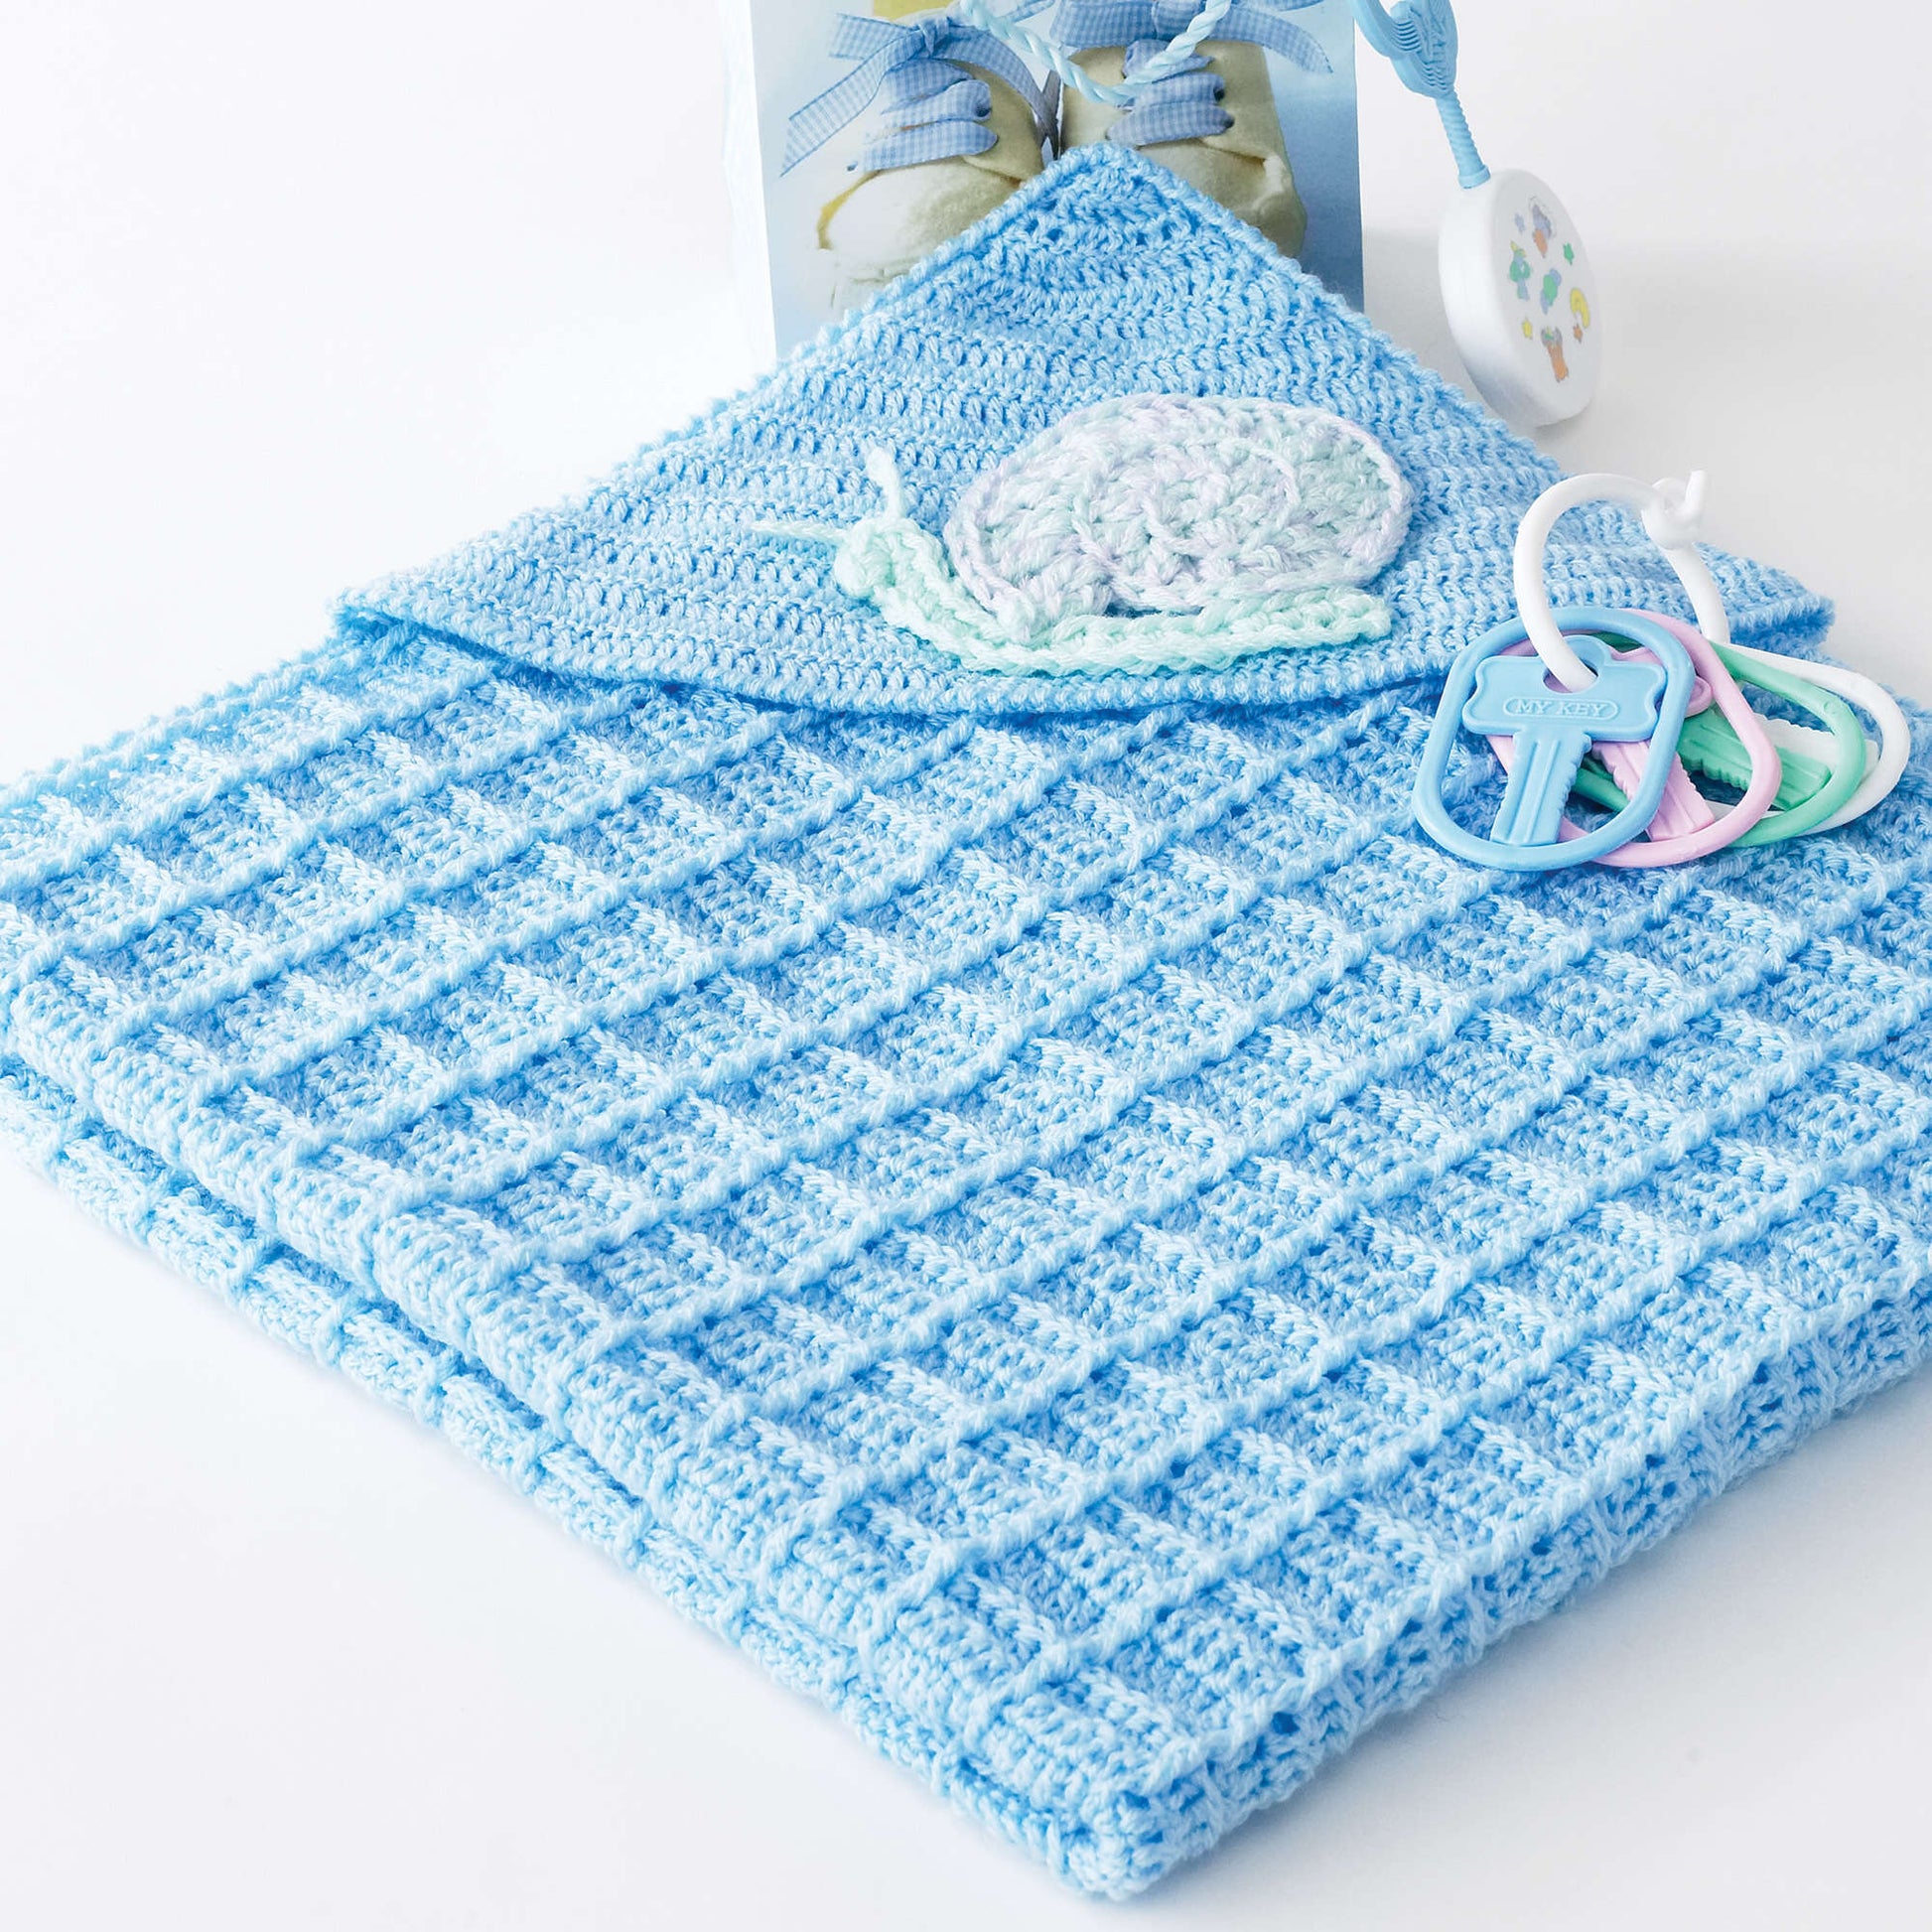 Free Bernat Snail Crochet Blanket Pattern